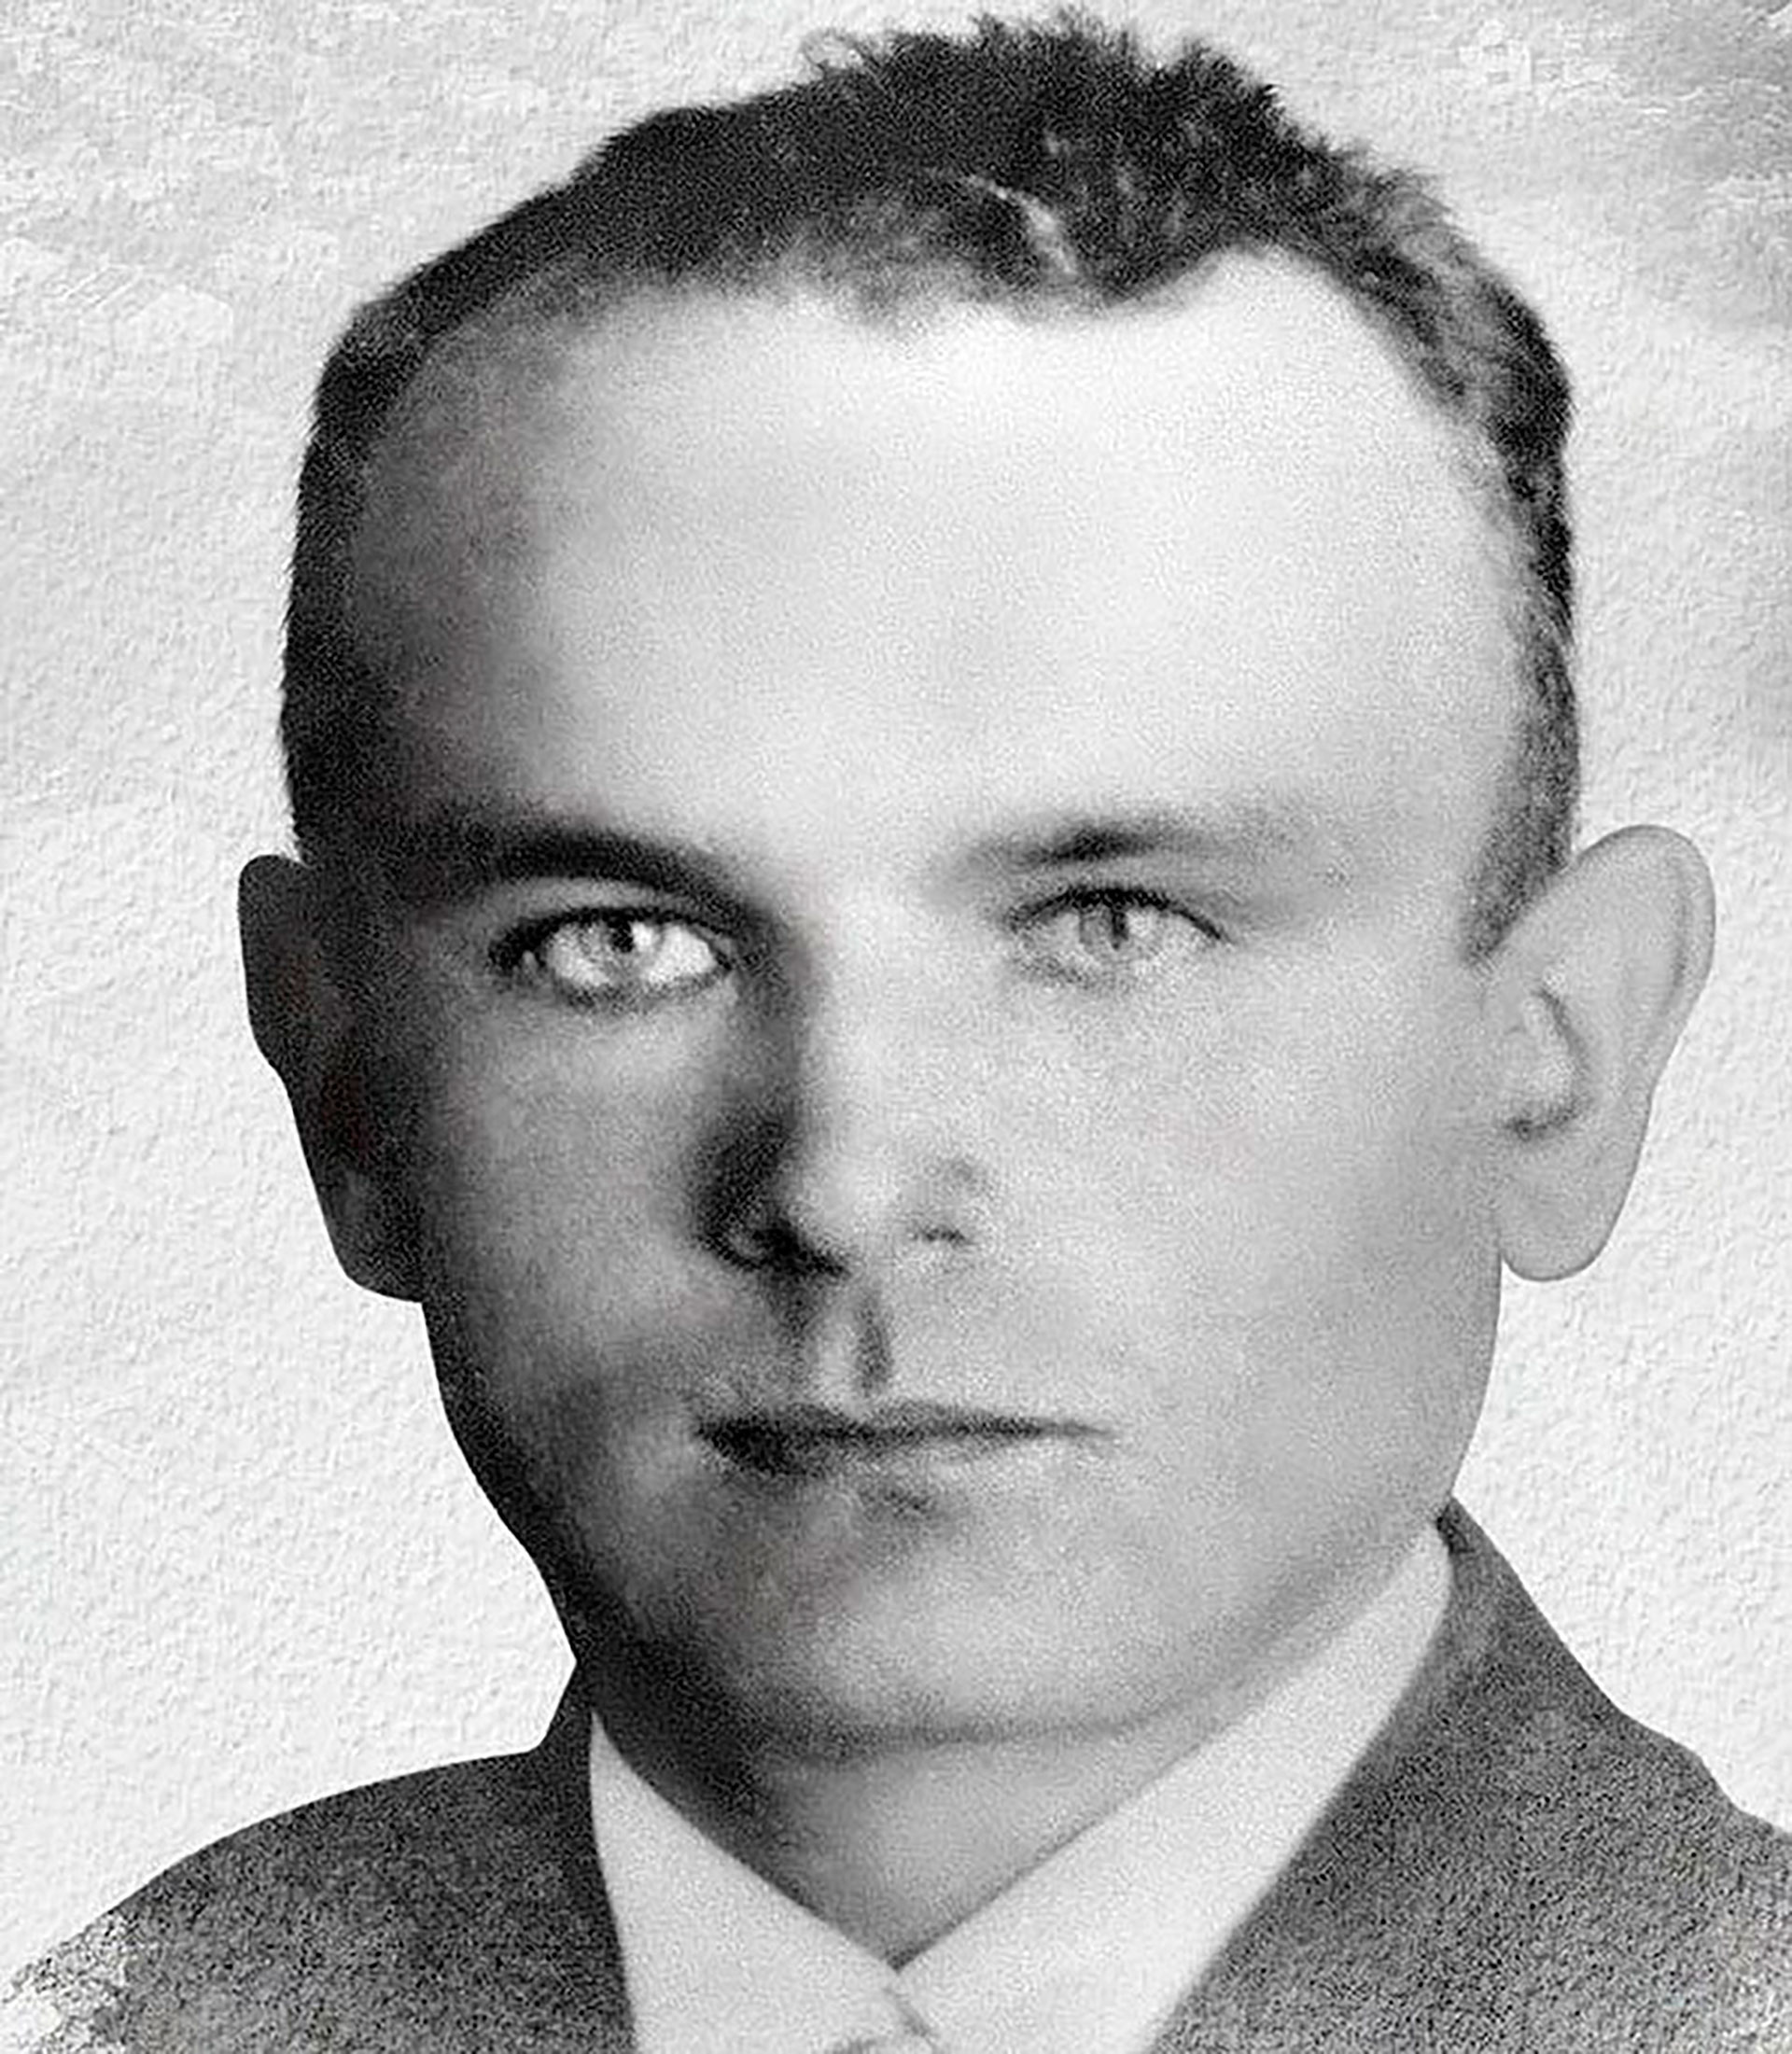 Franz Honiok, el agricultor y nacionalista polaco asesinado al que habían detenido y obligado a disfrazarse con uniformes polacos para reforzar la mentira de Hitler. Fue la primera víctima de la Segunda Guerra Mundial